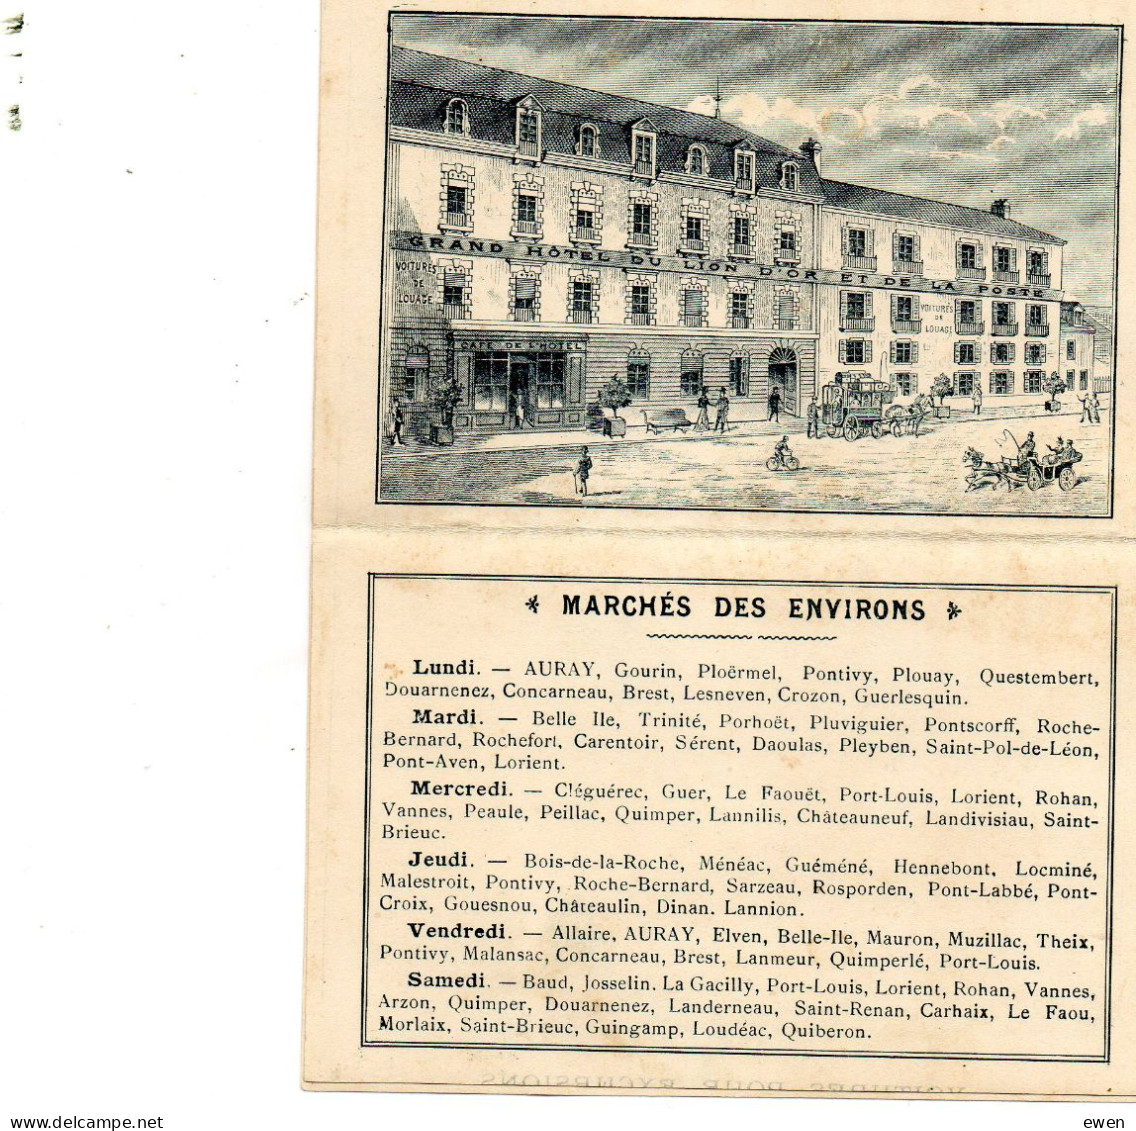 2 Dépliants Publicitaires Hôtel Du LIon D'Or à Auray, Morbihan. (Années 1920) - Dépliants Touristiques